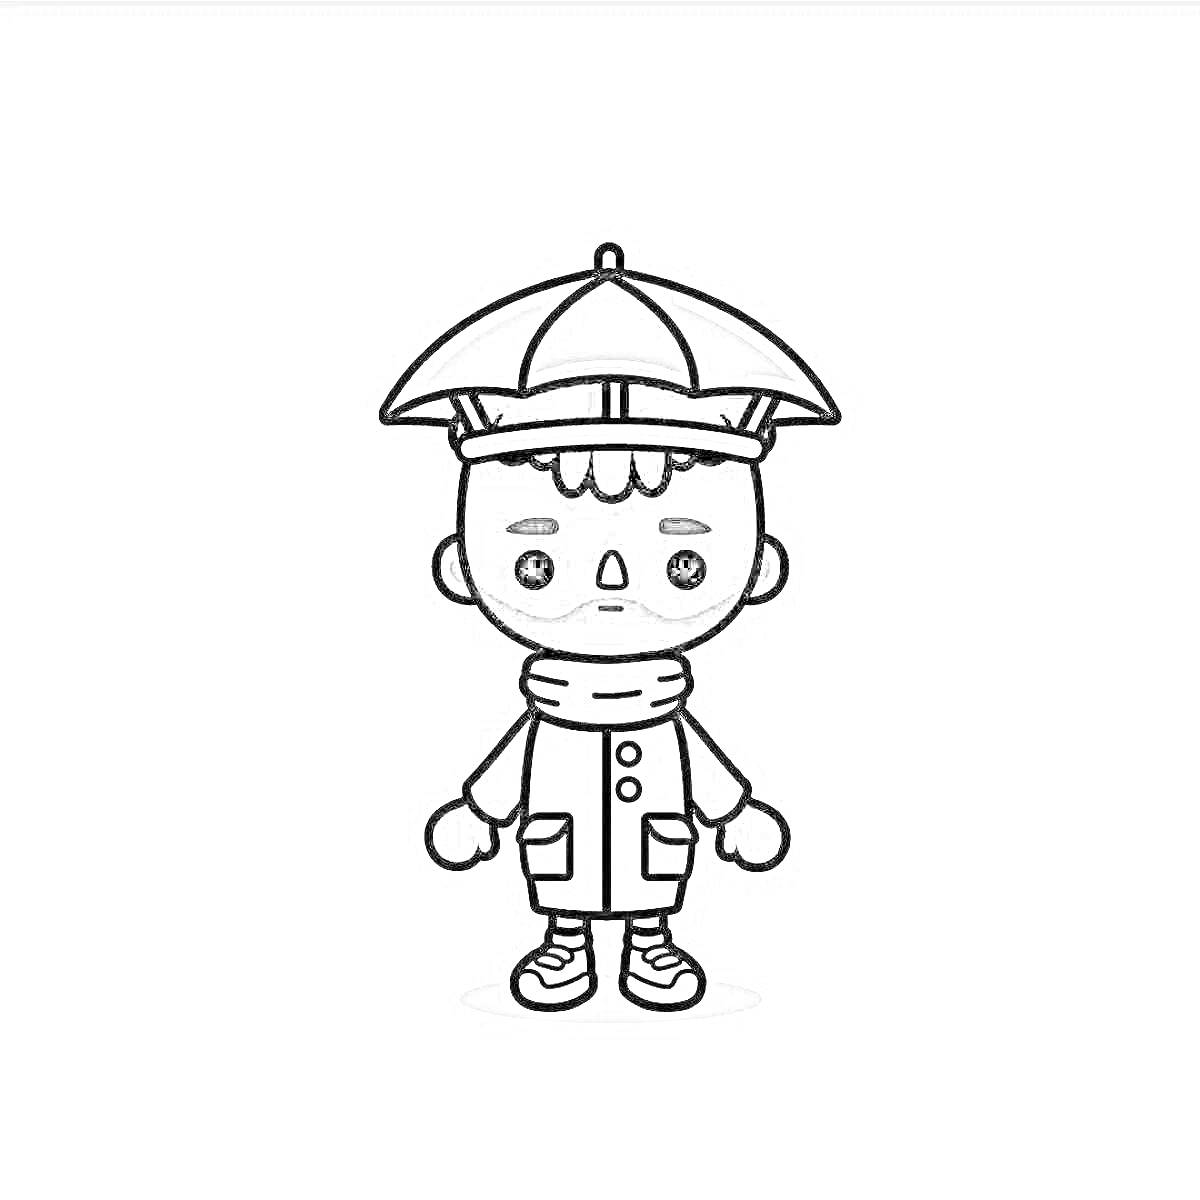 Раскраска Человек в шляпе-зонтике, шарфе и пальто с карманами